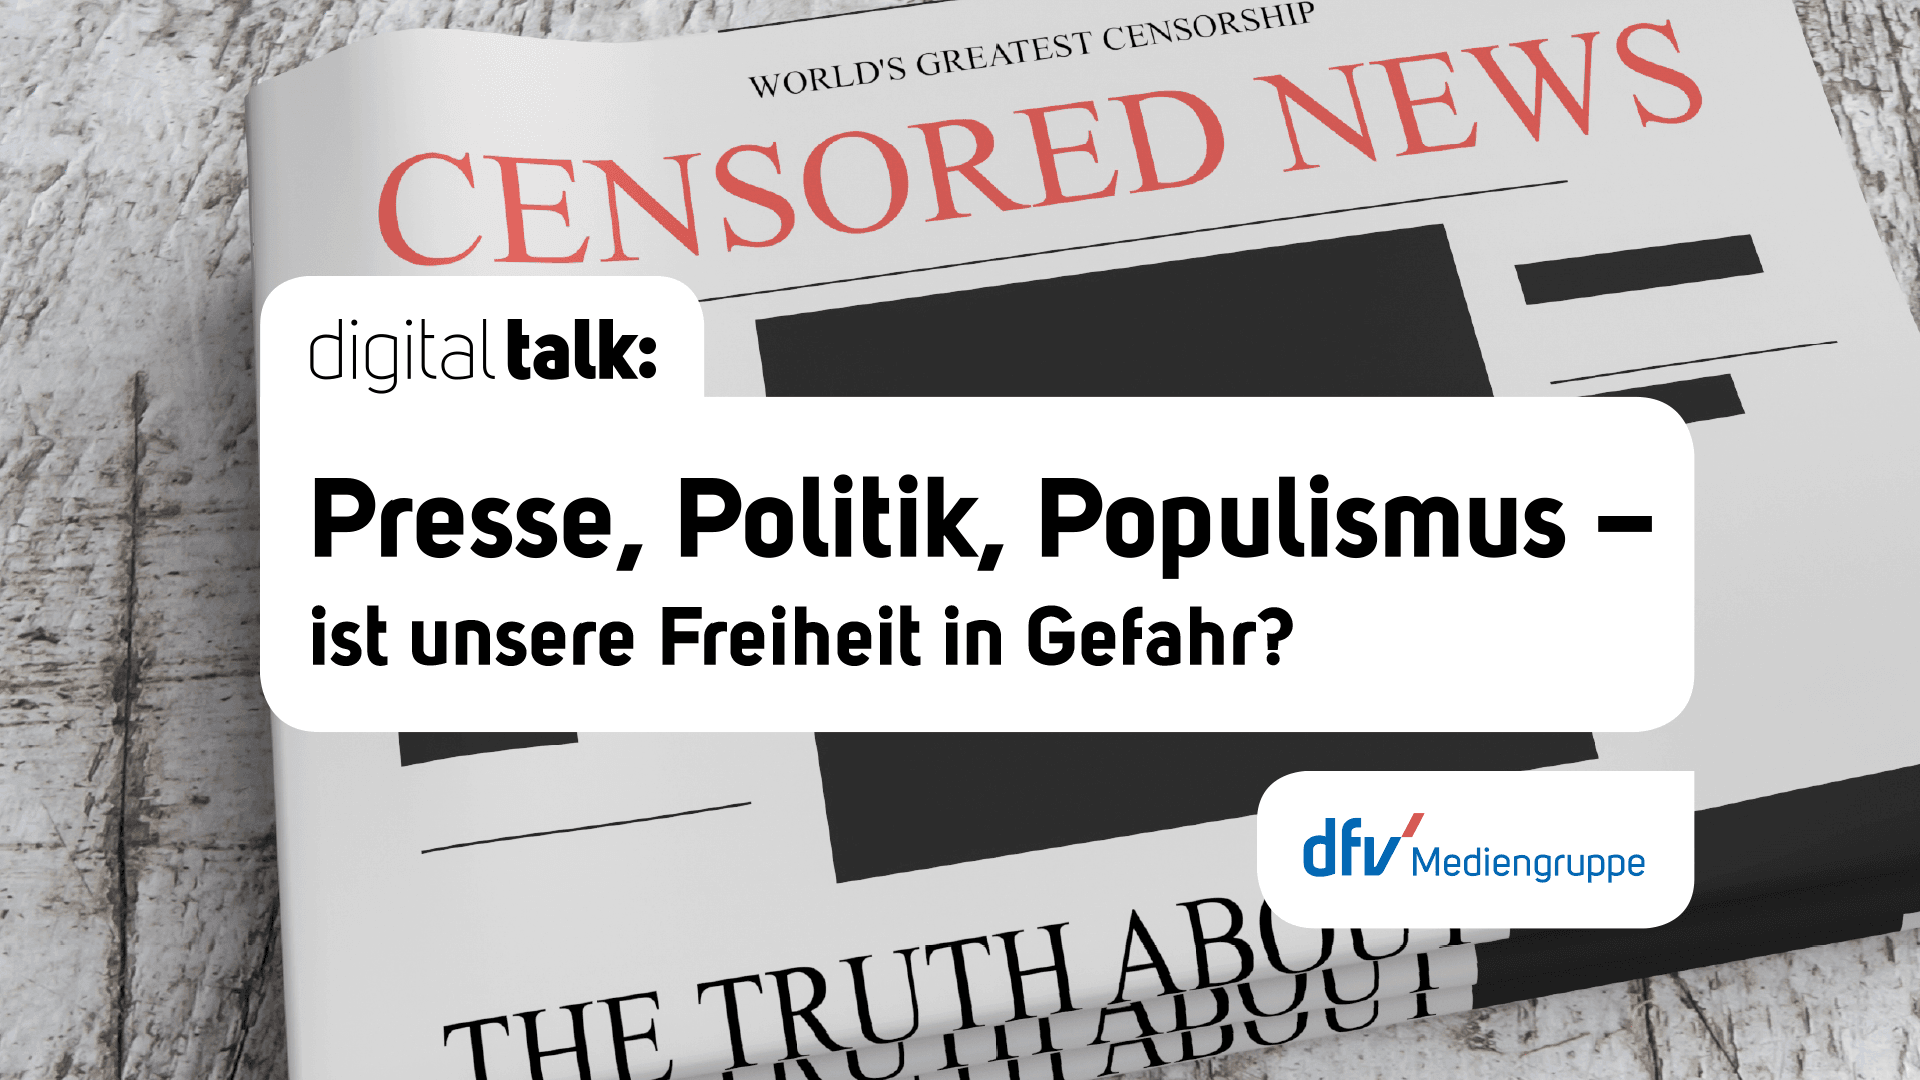 Den Digital Talk "Presse, Politik, Populismus - ist unserer Freiheit in Gefahr?" der dfv Mediengruppe gibt es zum Nachschauen.